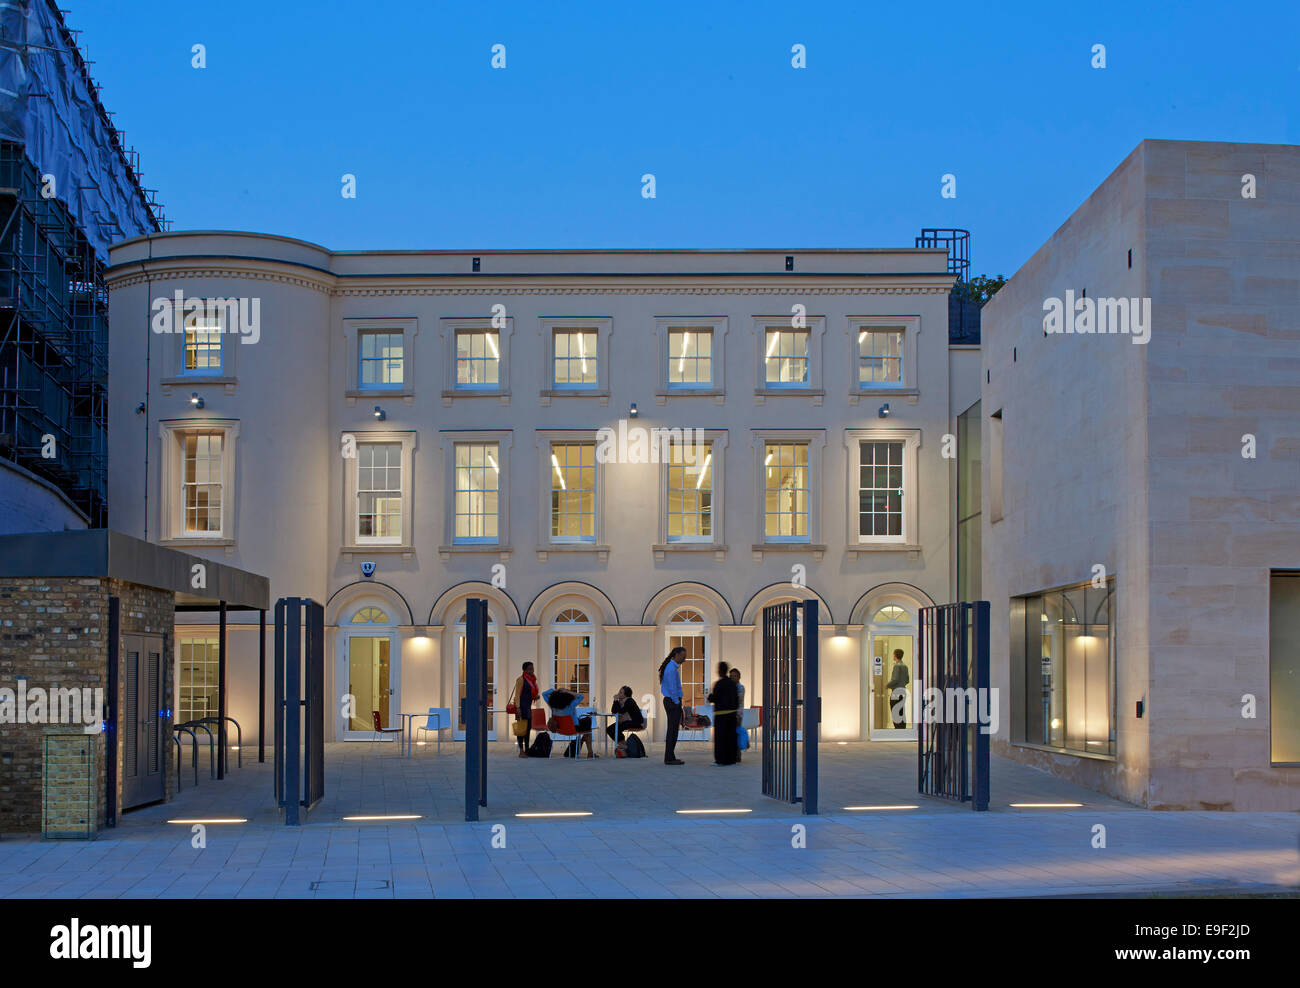 Nero archivi culturali (BCA), Londra, Regno Unito. Architetto: Pringle Richards Sharratt Ltd, 2014. Foto Stock